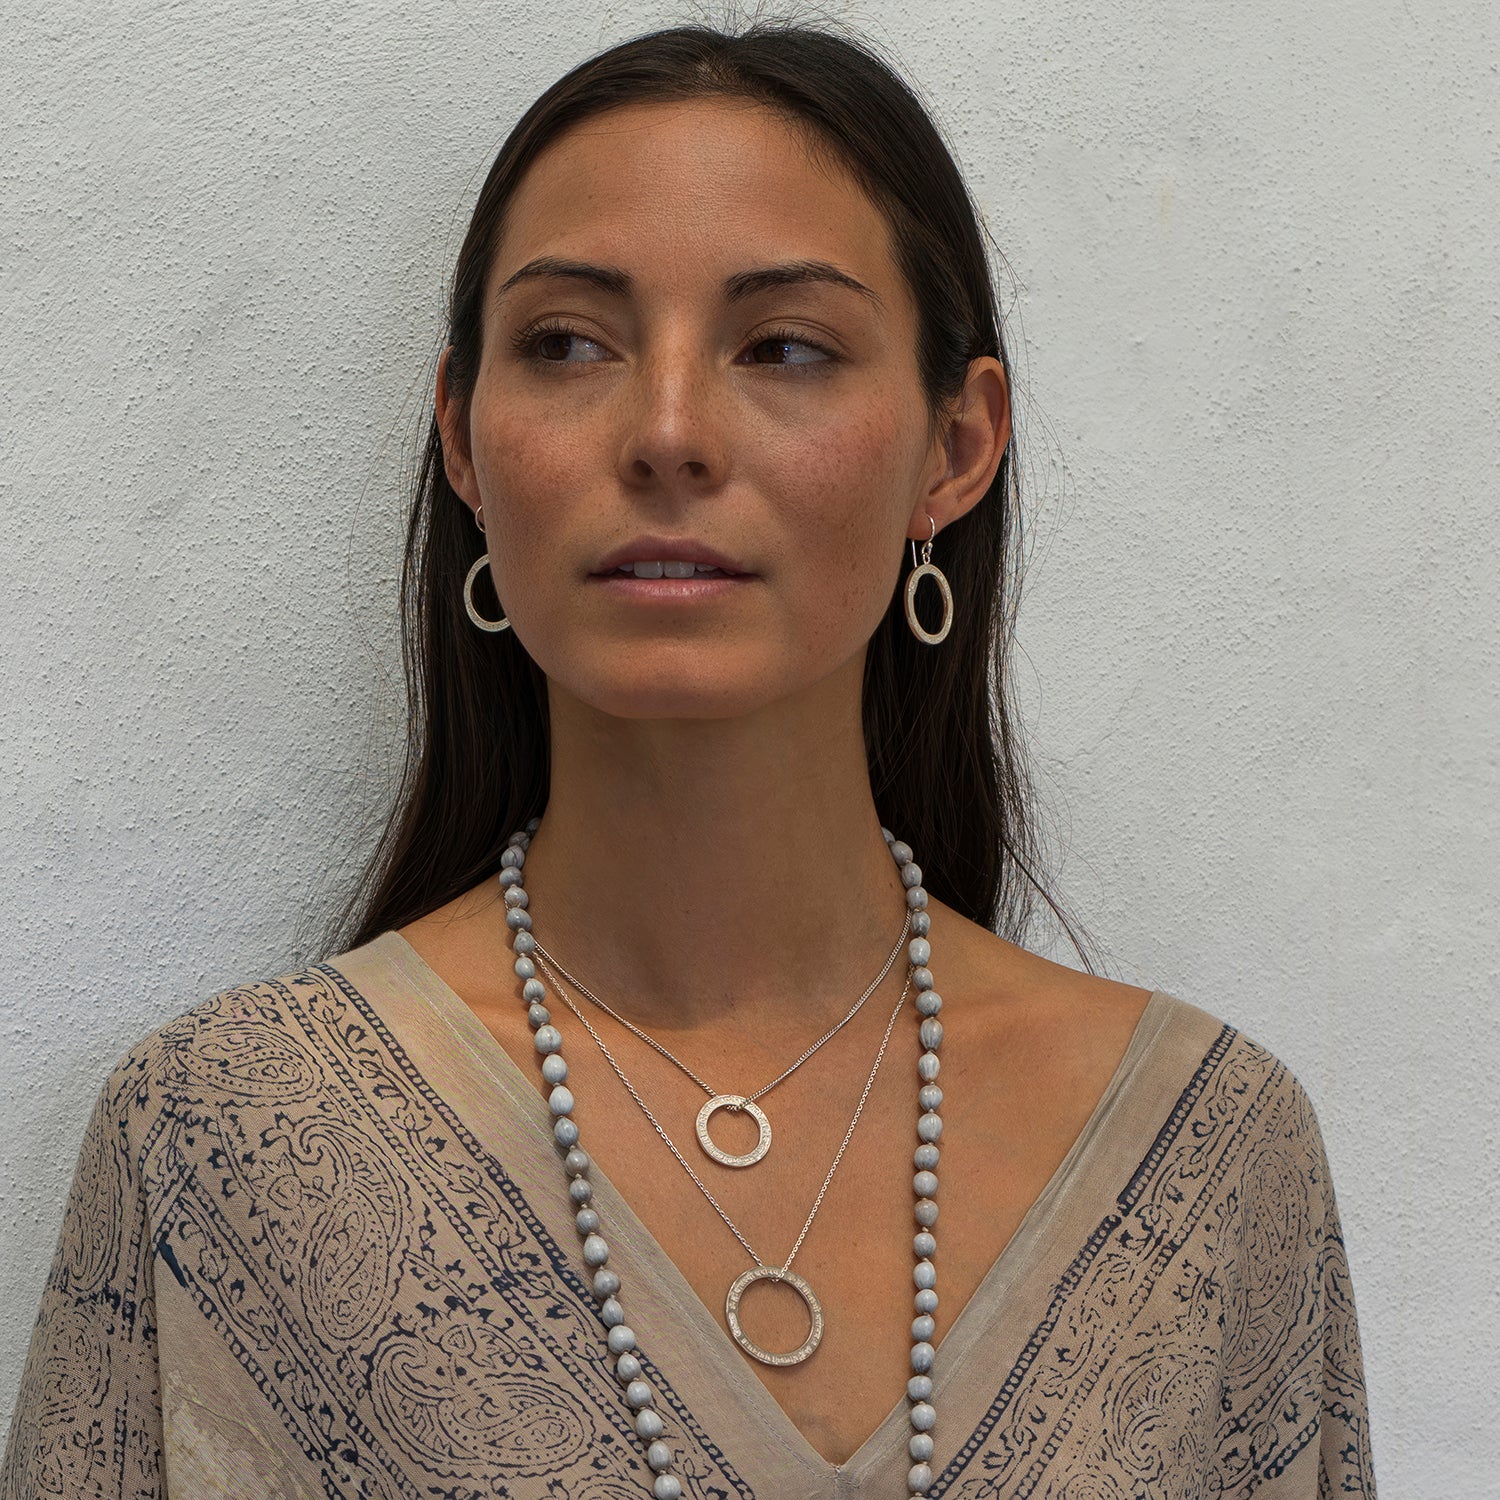 Sabrina aus Berlin kombiniert eine Lakshmi Mantra Kette mini in Sterling Silber aus der Yoga Schmuckkollektion von ETERNAL BLISS mit spirituellem Schmuck